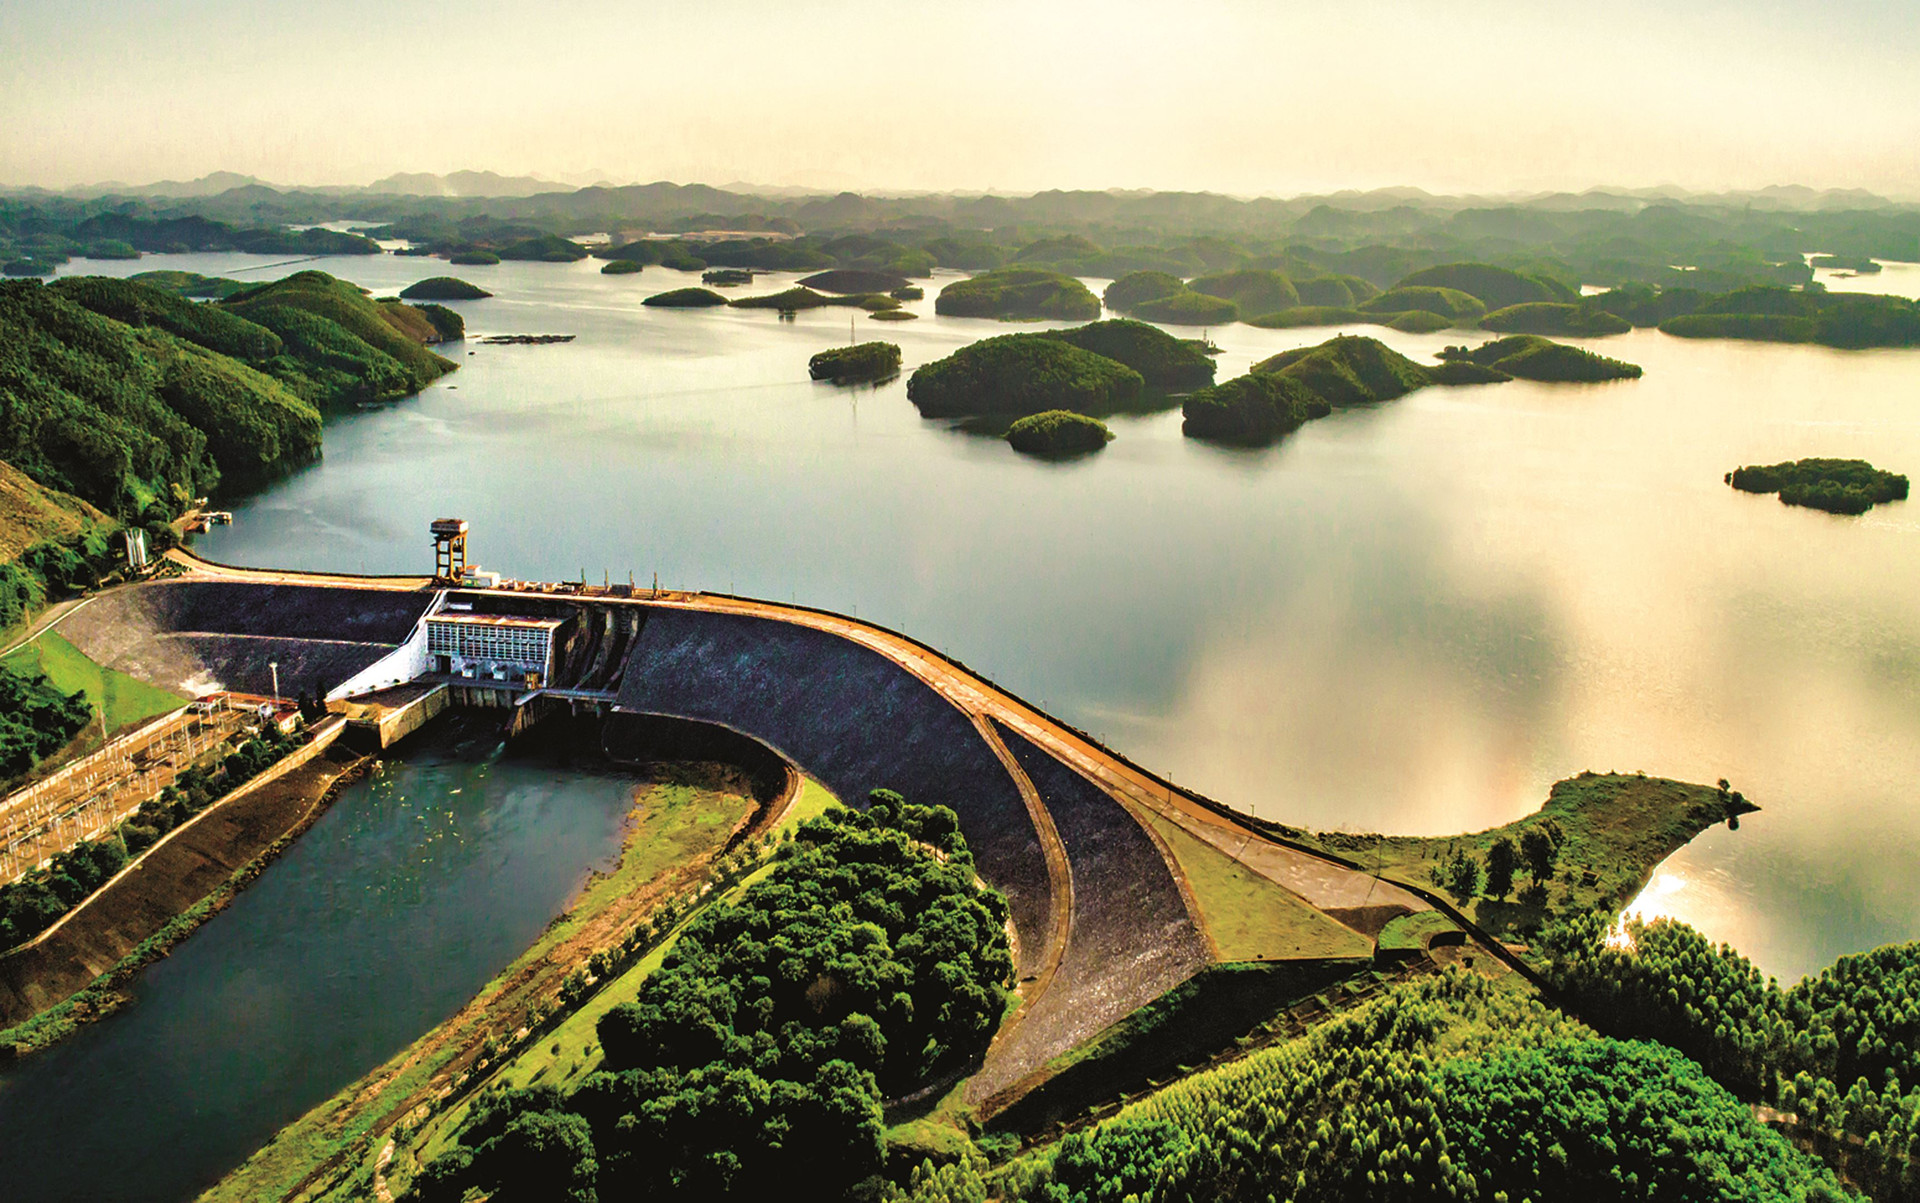 Hồ thủy điện thác Bà đạt 111% lưu lượng nước cao hơn trung bình nhiều năm